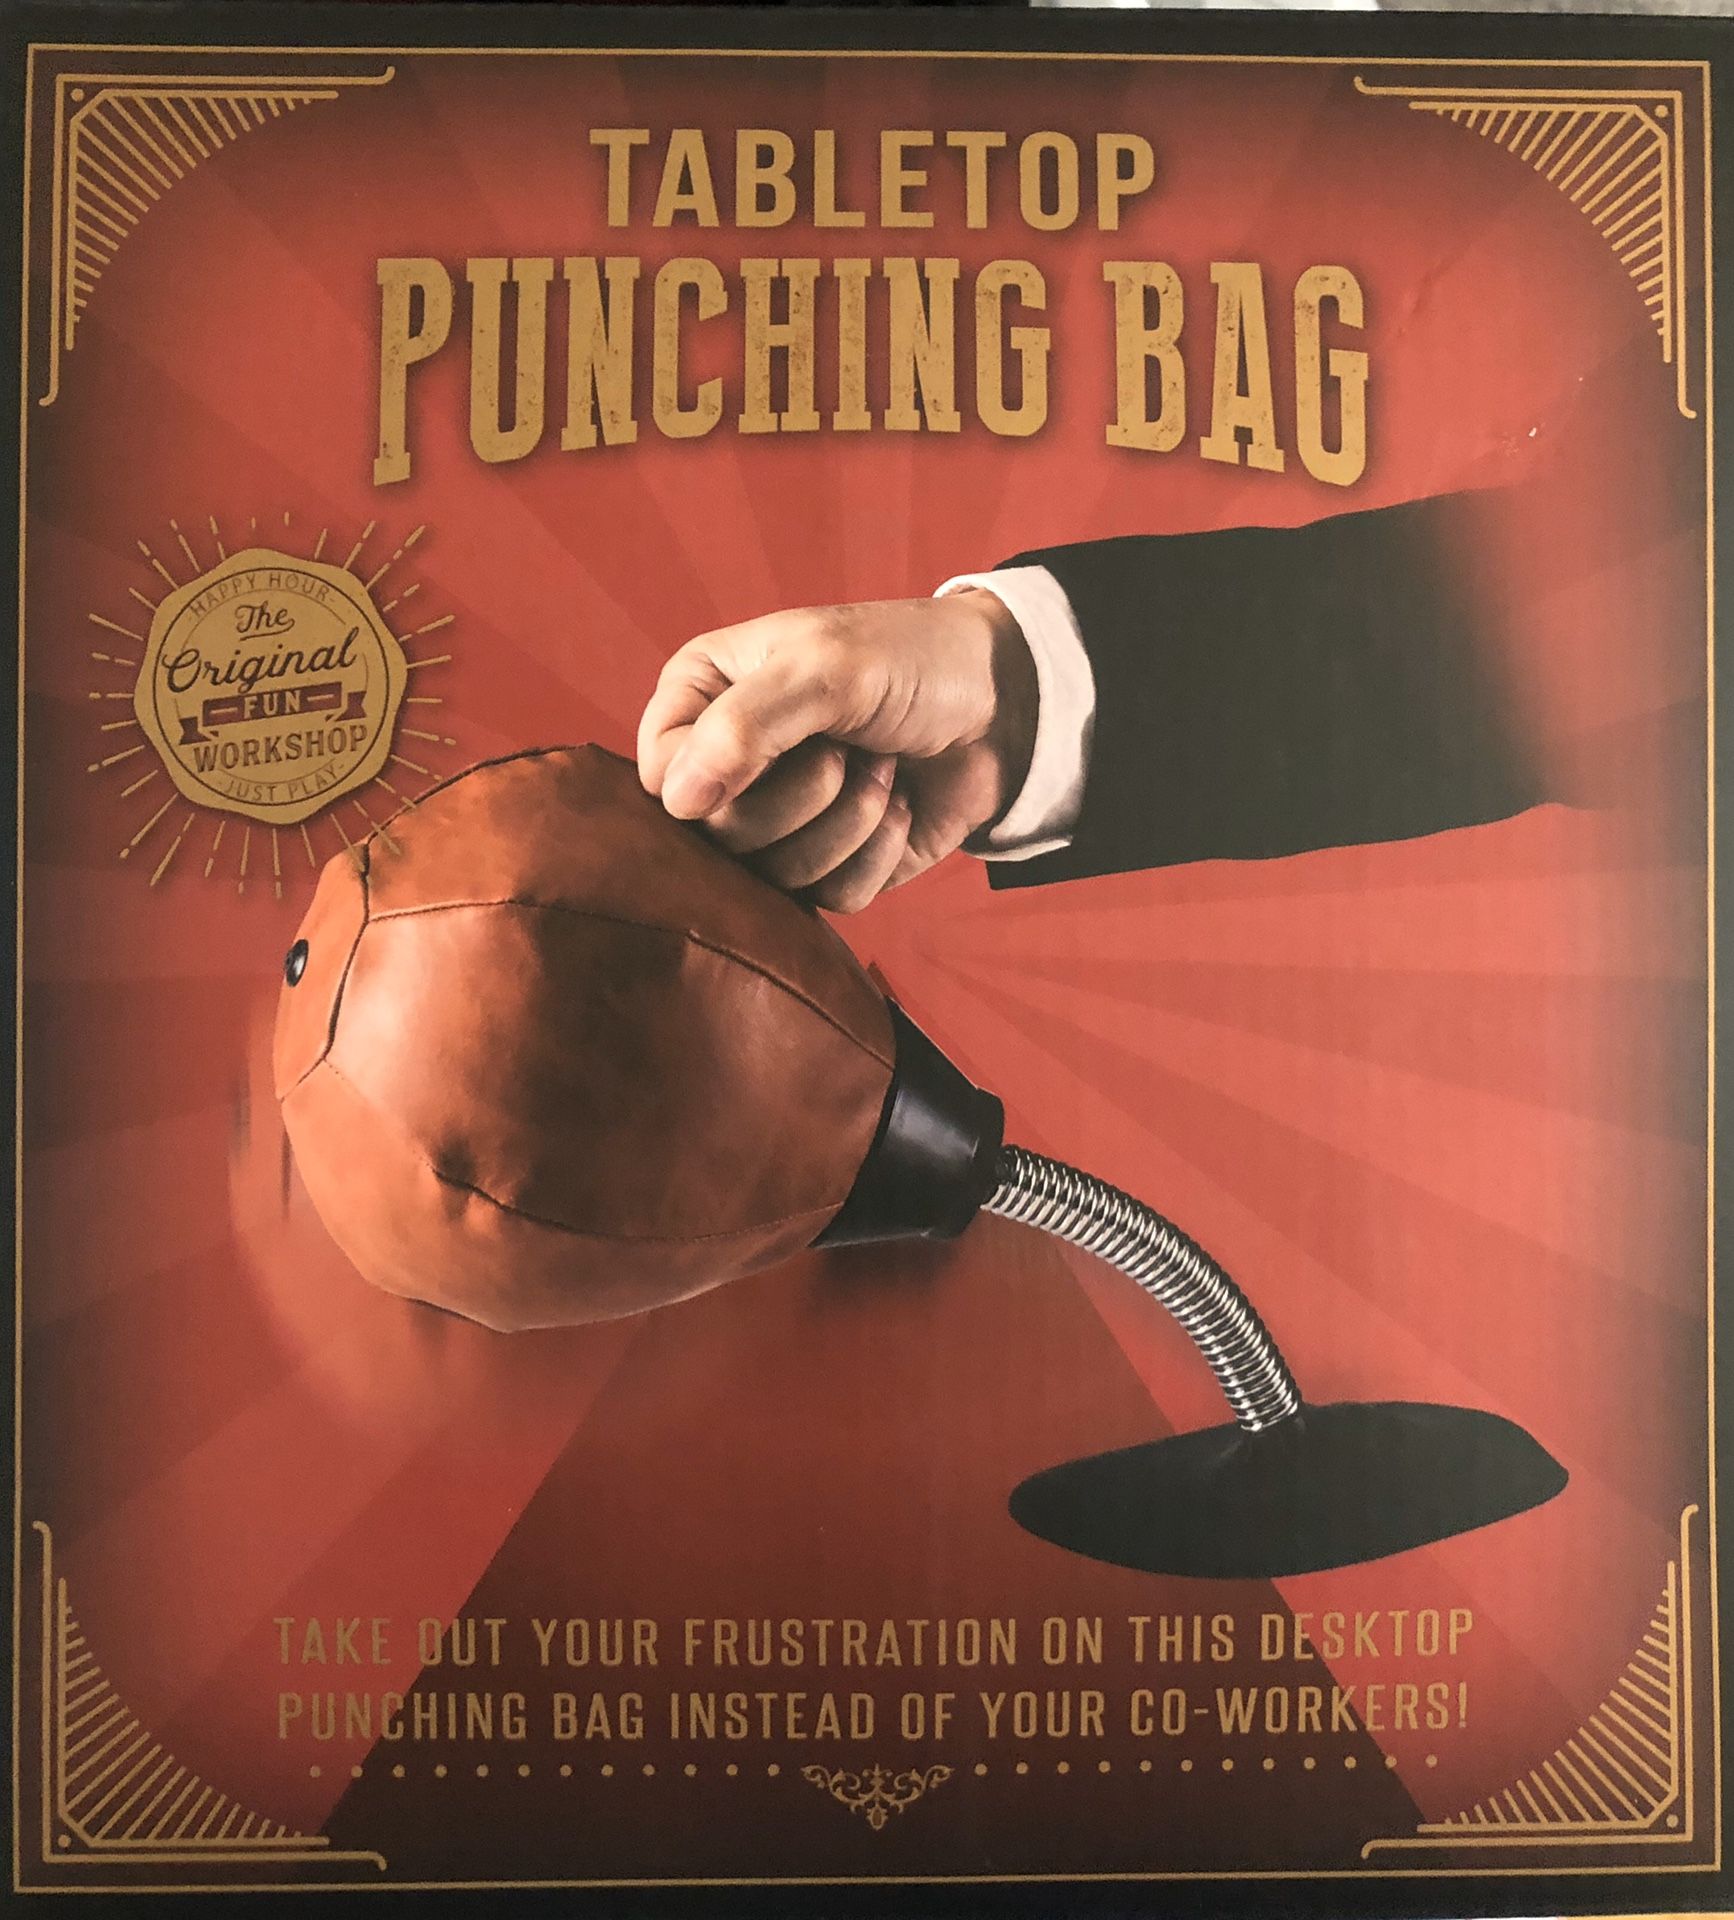 Tabletop punching bag